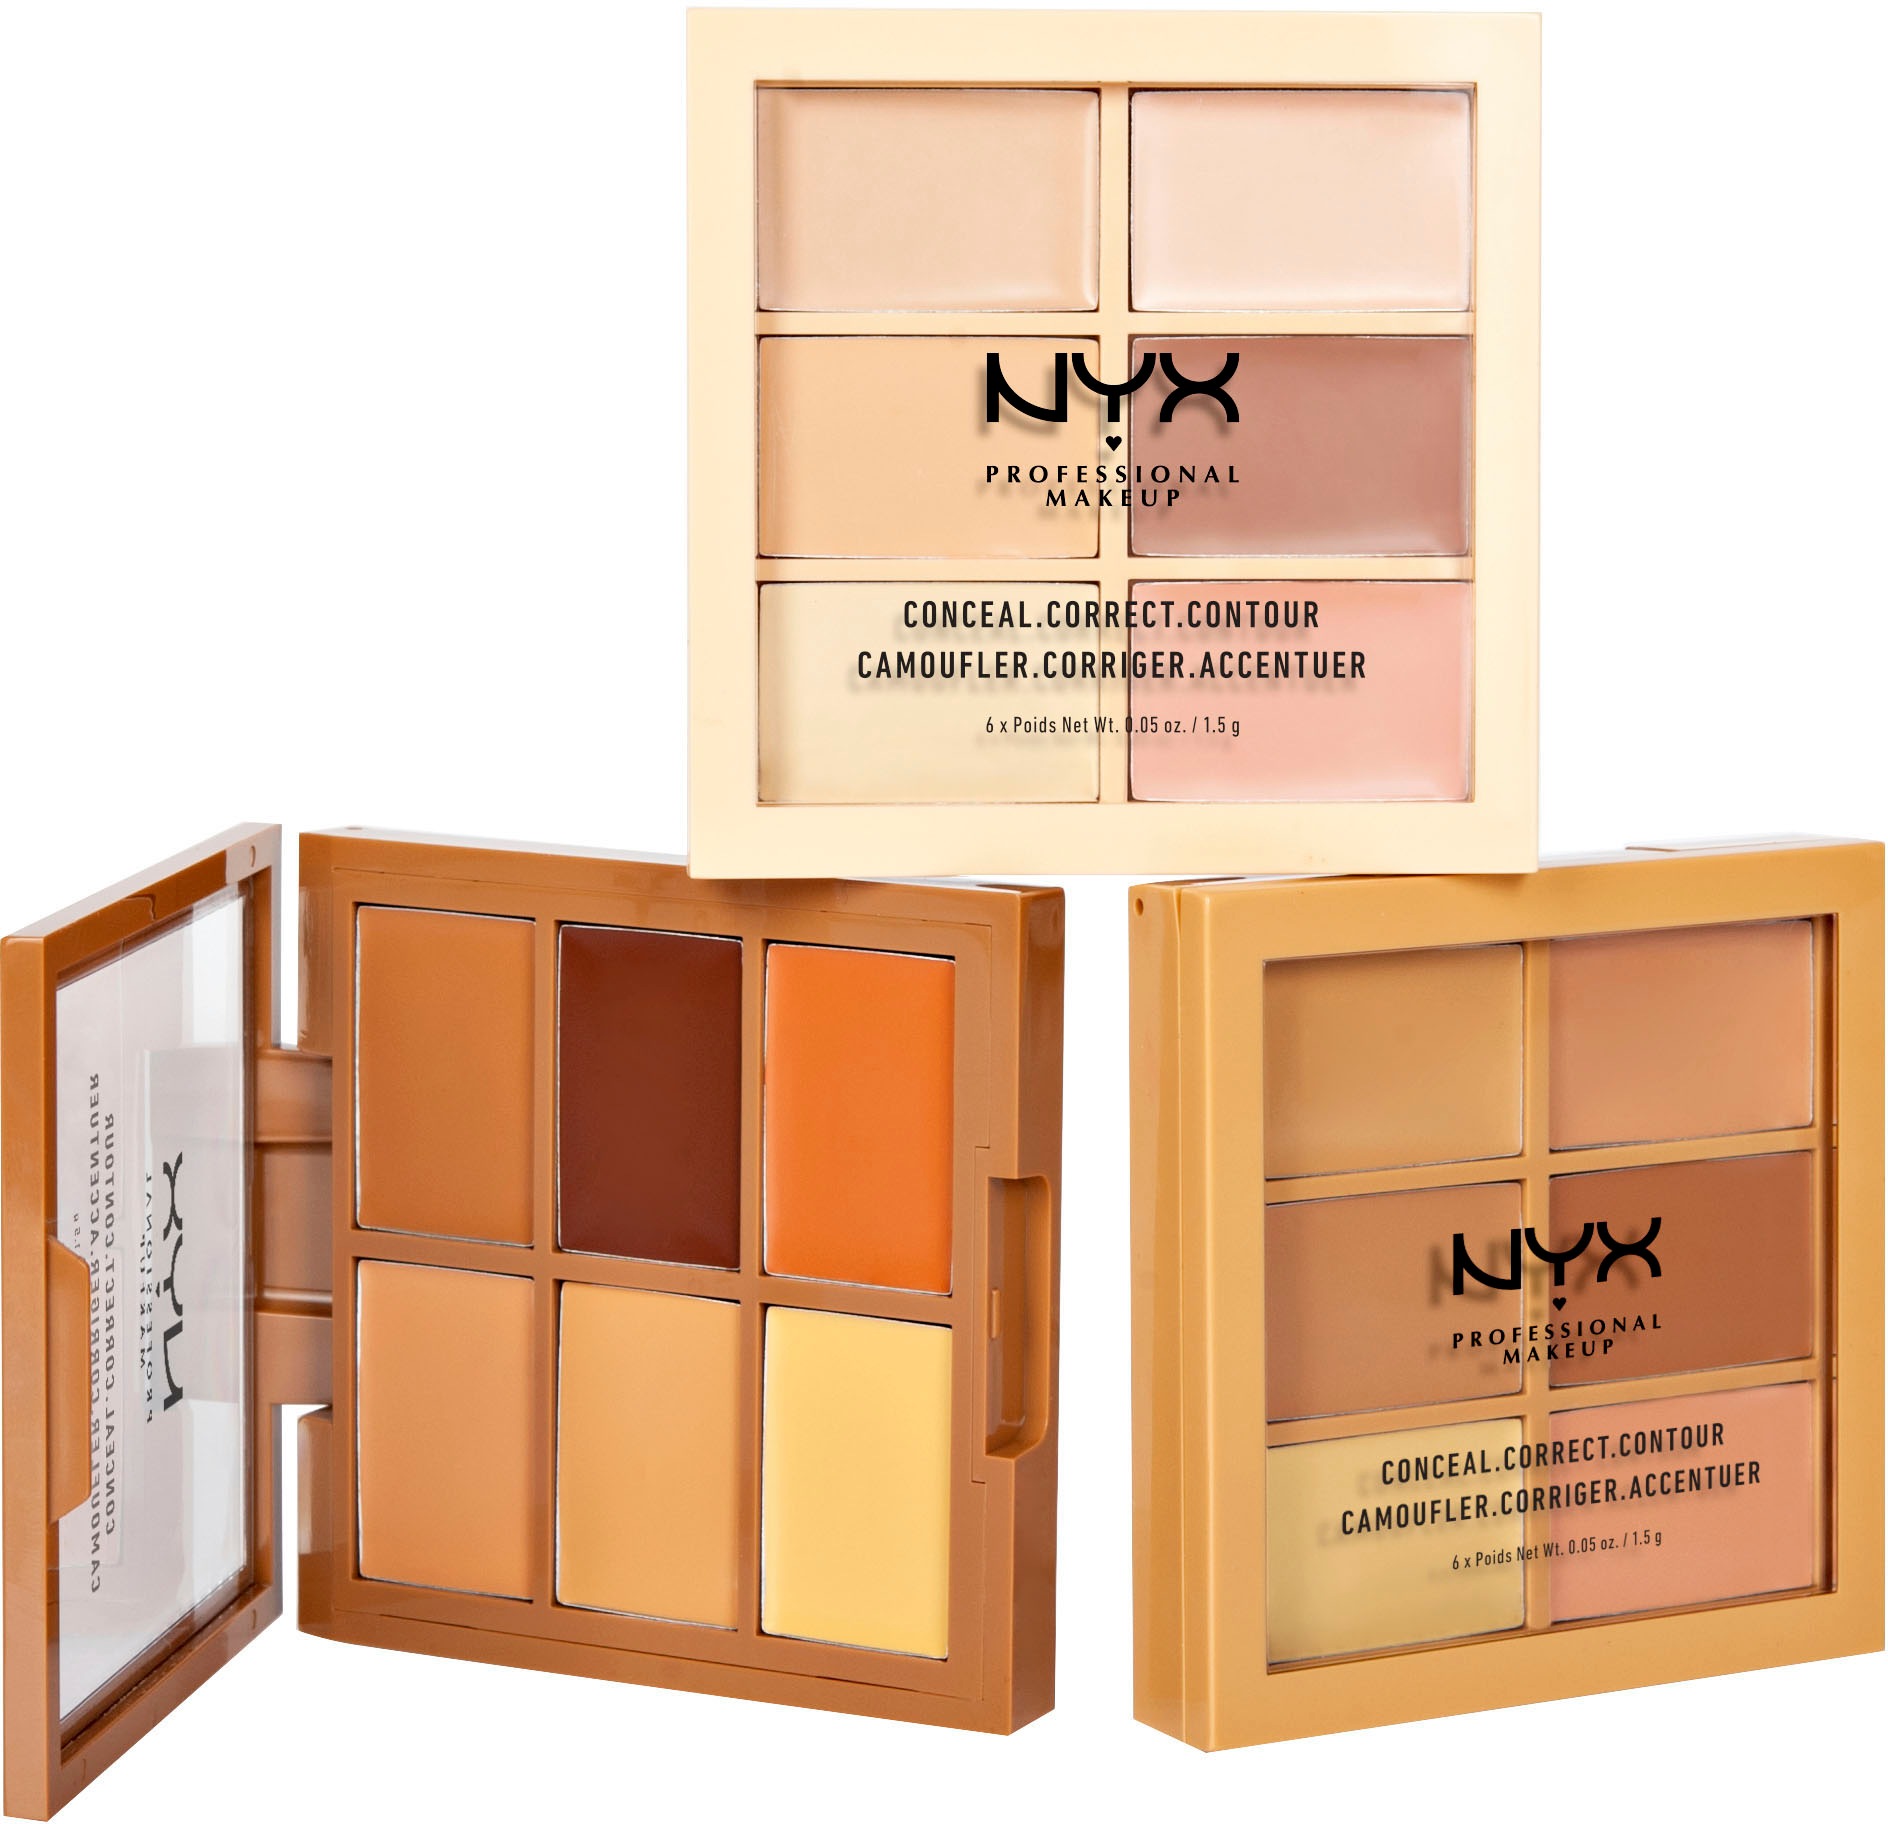 NYX Professional Makeup Conceal, Correct, Contour Palette, Medium